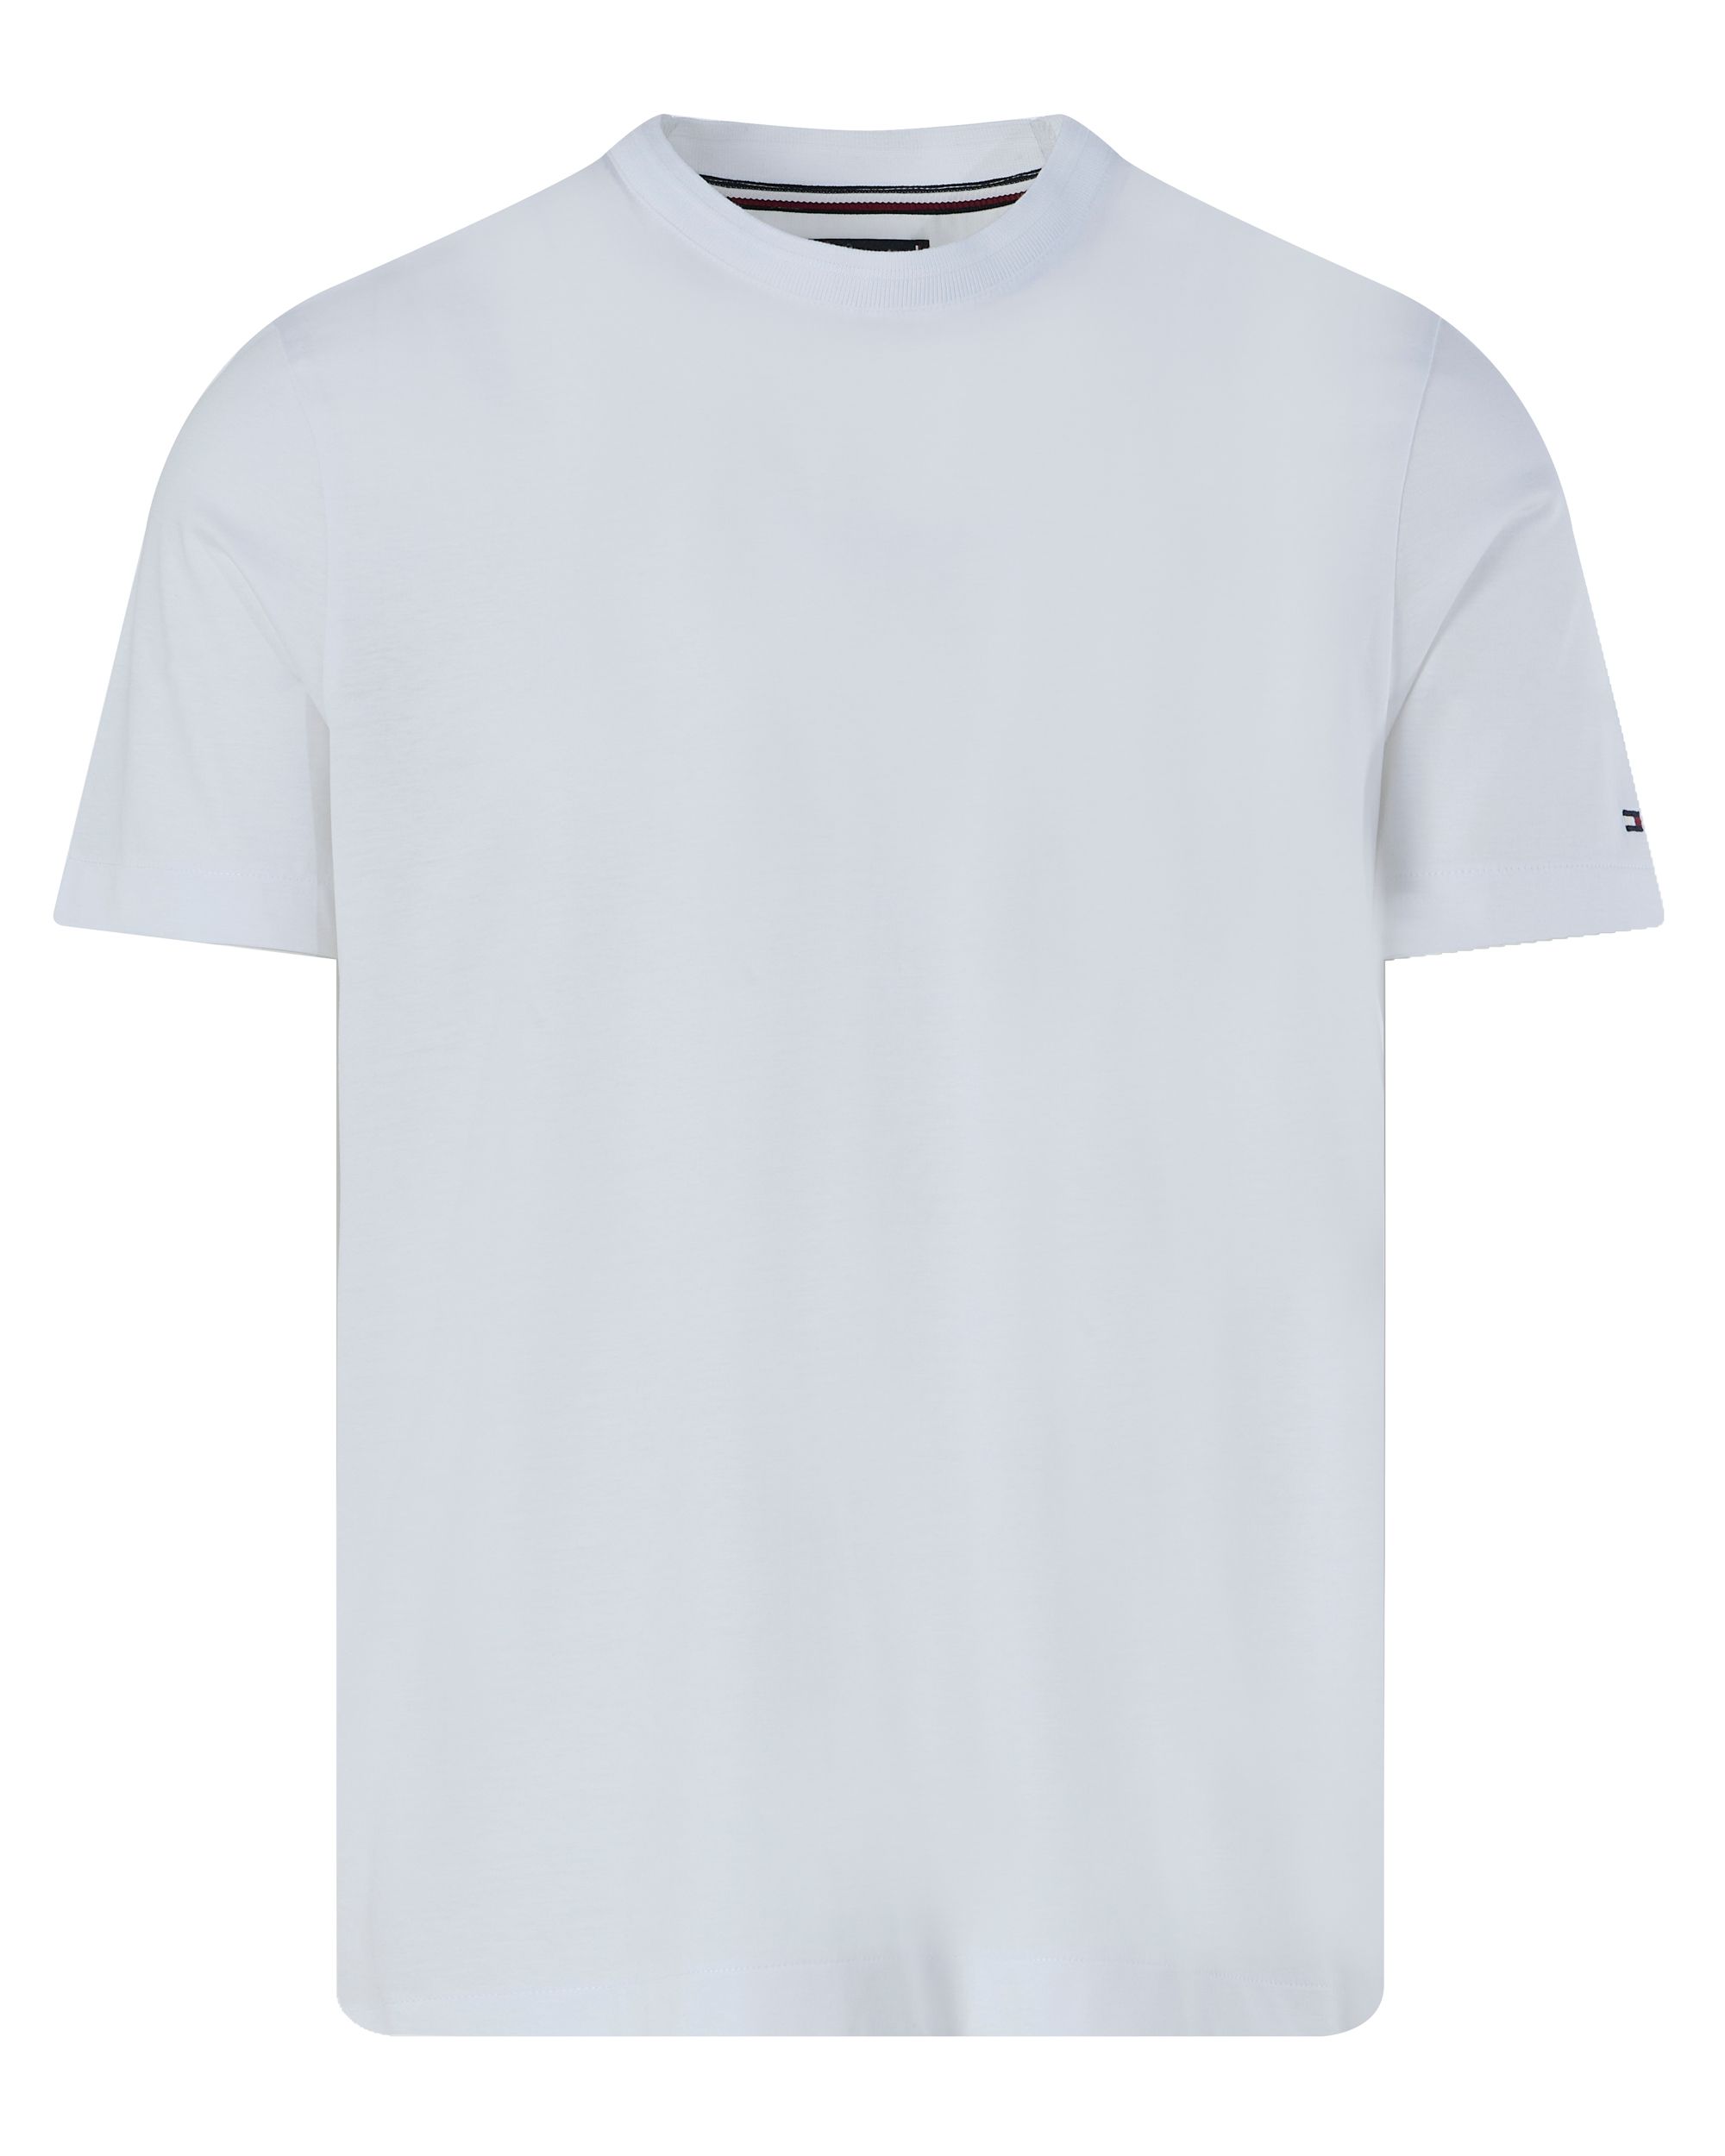 Tommy Hilfiger Menswear T-shirt KM Grijs 094636-001-L